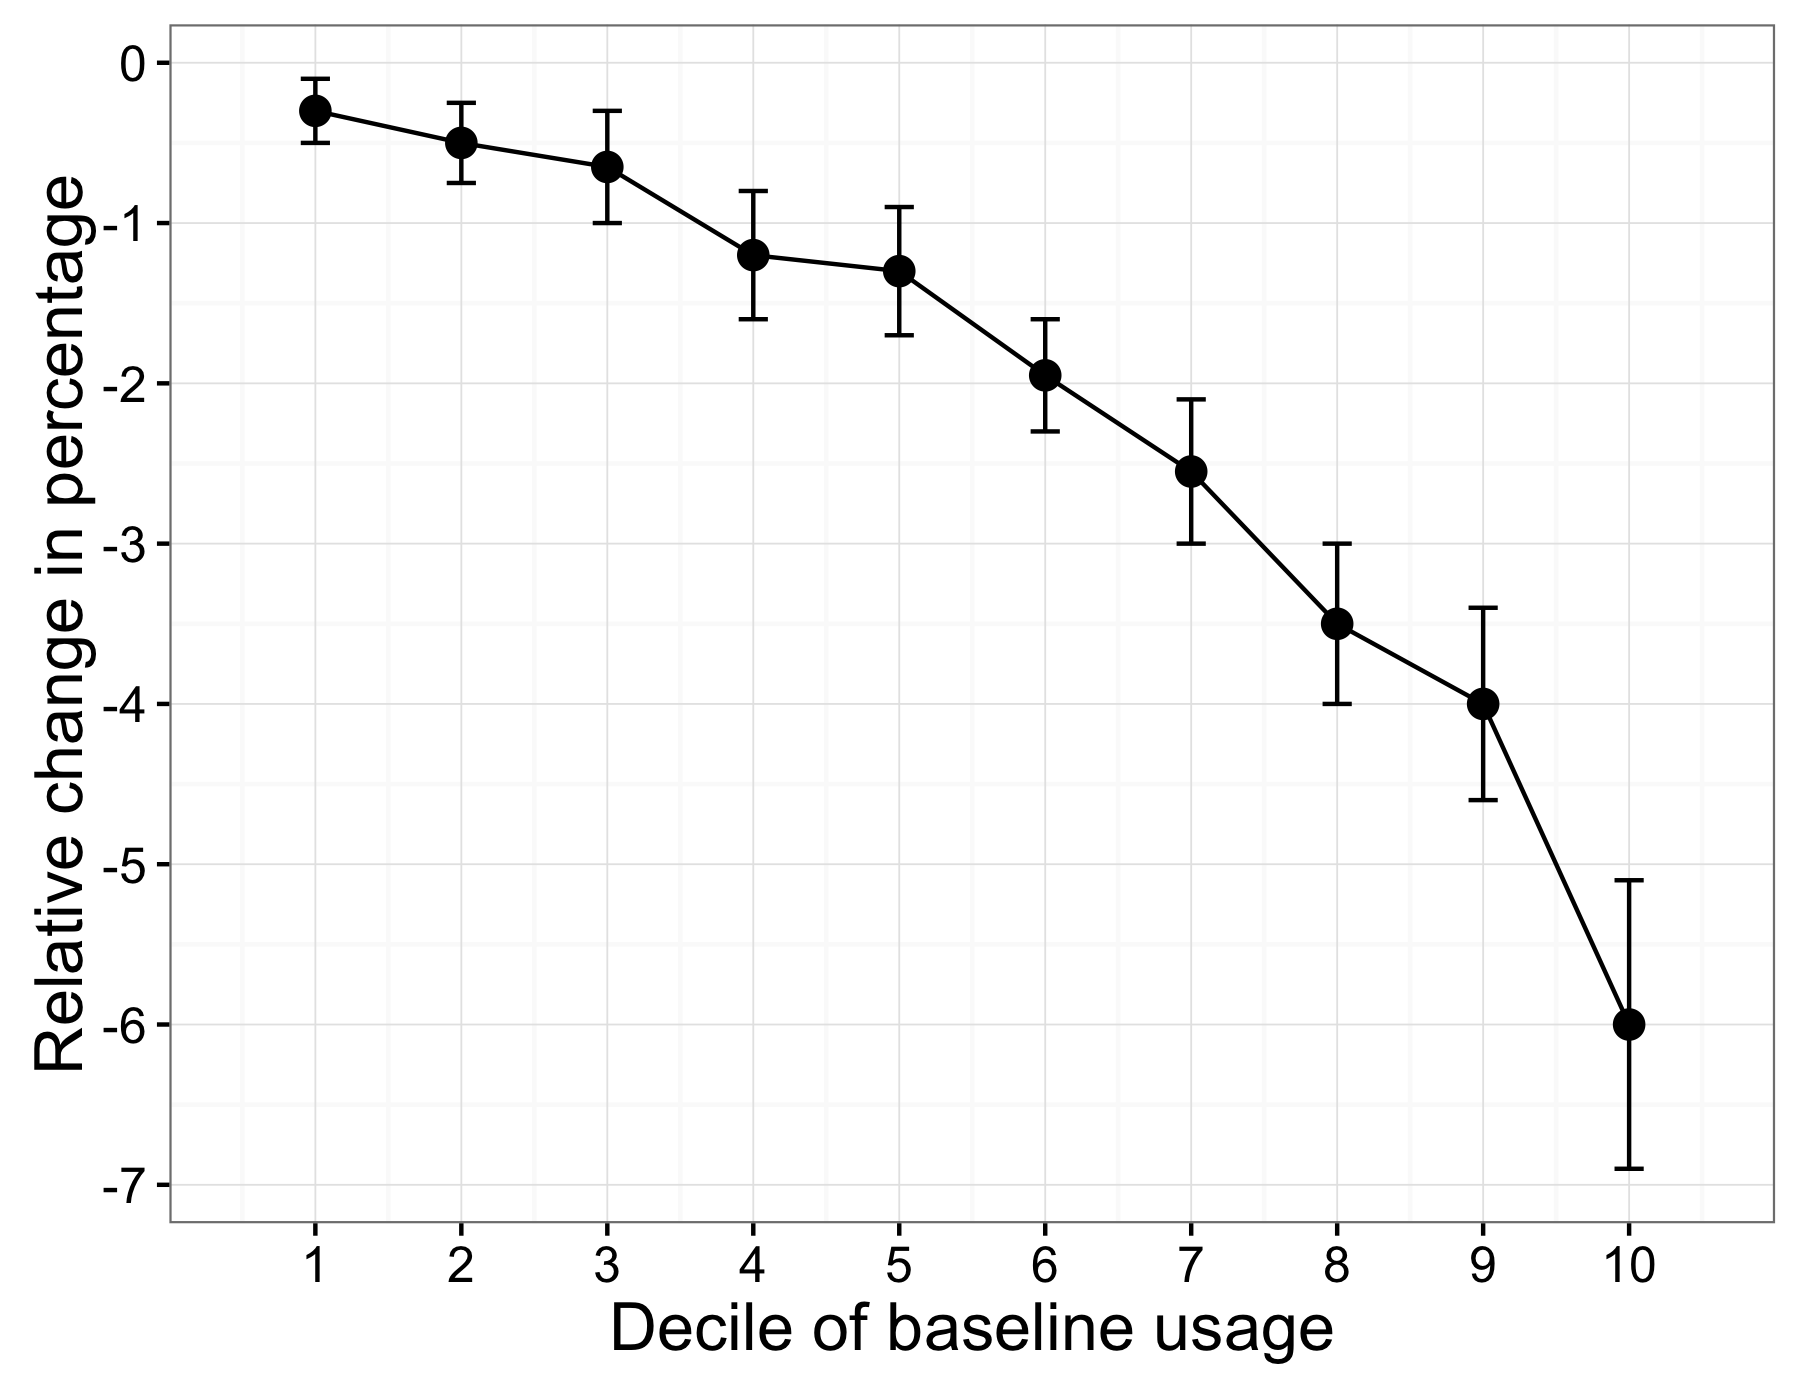 Figura 4.7: L'eterogeneità degli effetti del trattamento in Allcott (2011). La diminuzione del consumo di energia è stato diverso per le persone in diversi decili di utilizzo della linea di base.